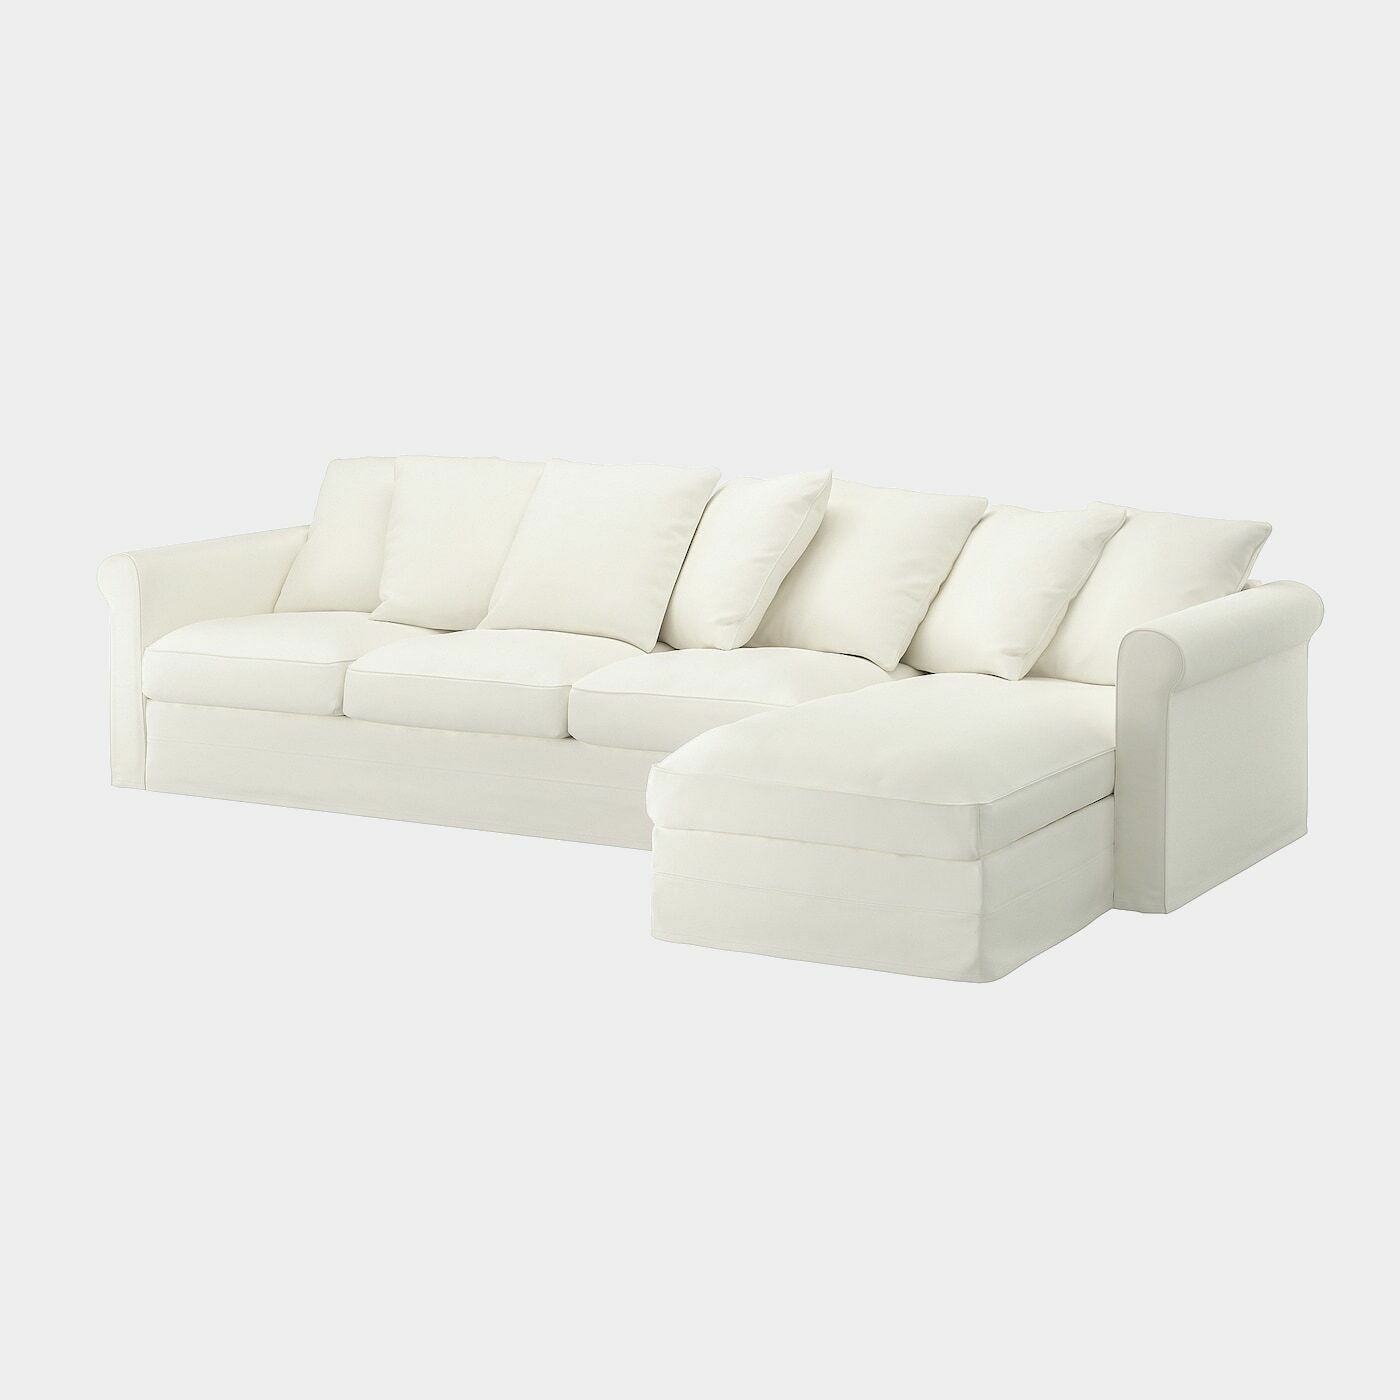 GRÖNLID 4er-Sofa mit Récamiere  -  - Möbel Ideen für dein Zuhause von Home Trends. Möbel Trends von Social Media Influencer für dein Skandi Zuhause.